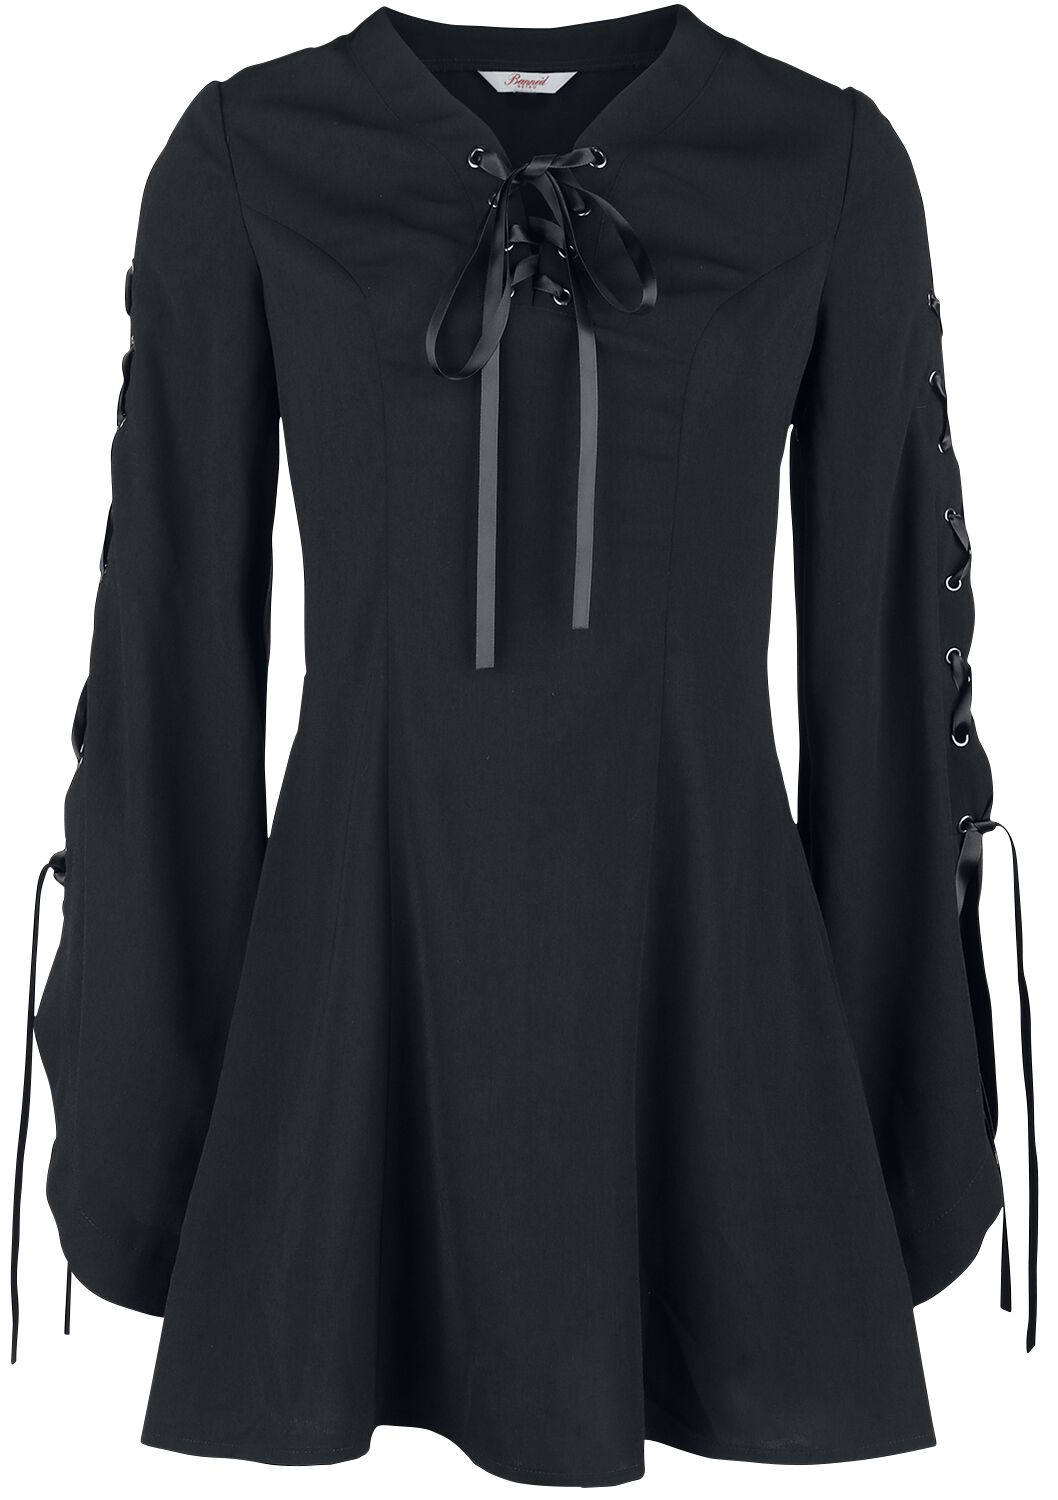 Banned Alternative - Gothic Kurzes Kleid - Jezebel Tie Dress - XS bis 4XL - für Damen - Größe L - schwarz